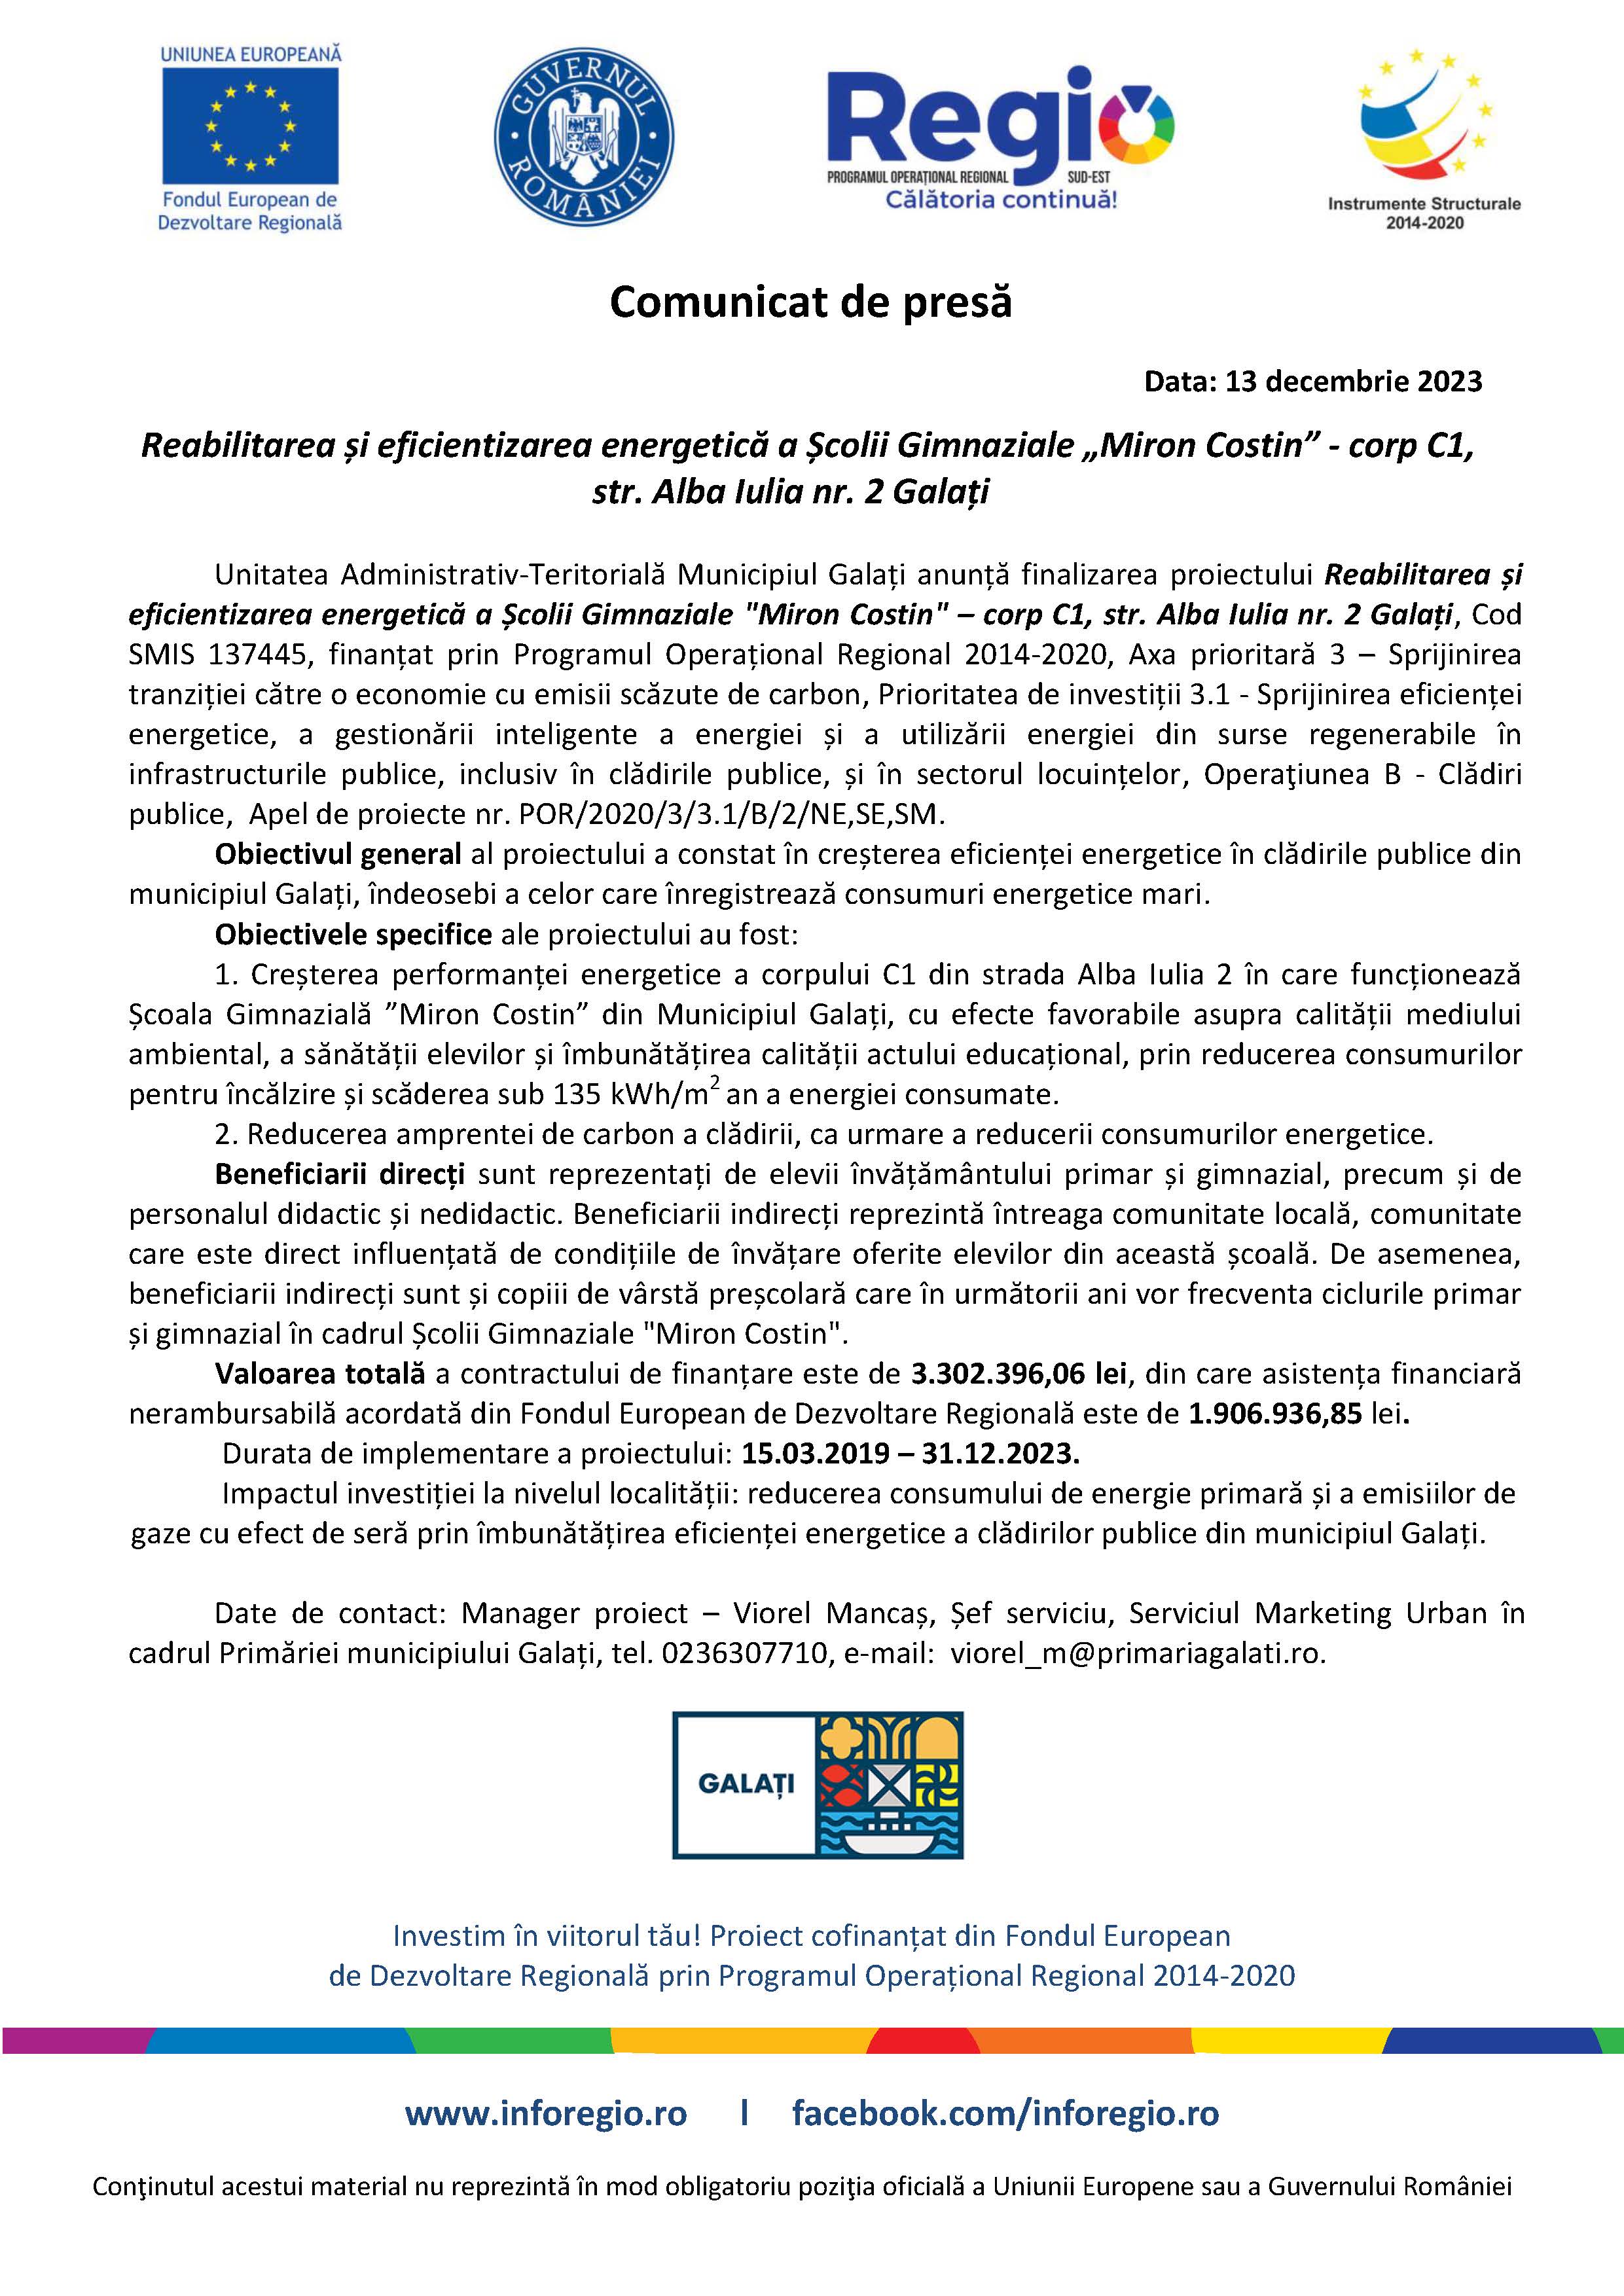 Reabilitarea și eficientizarea energetică a Școlii Gimnaziale „Miron Costin” - corp C1, str. Alba Iulia nr. 2 Galați